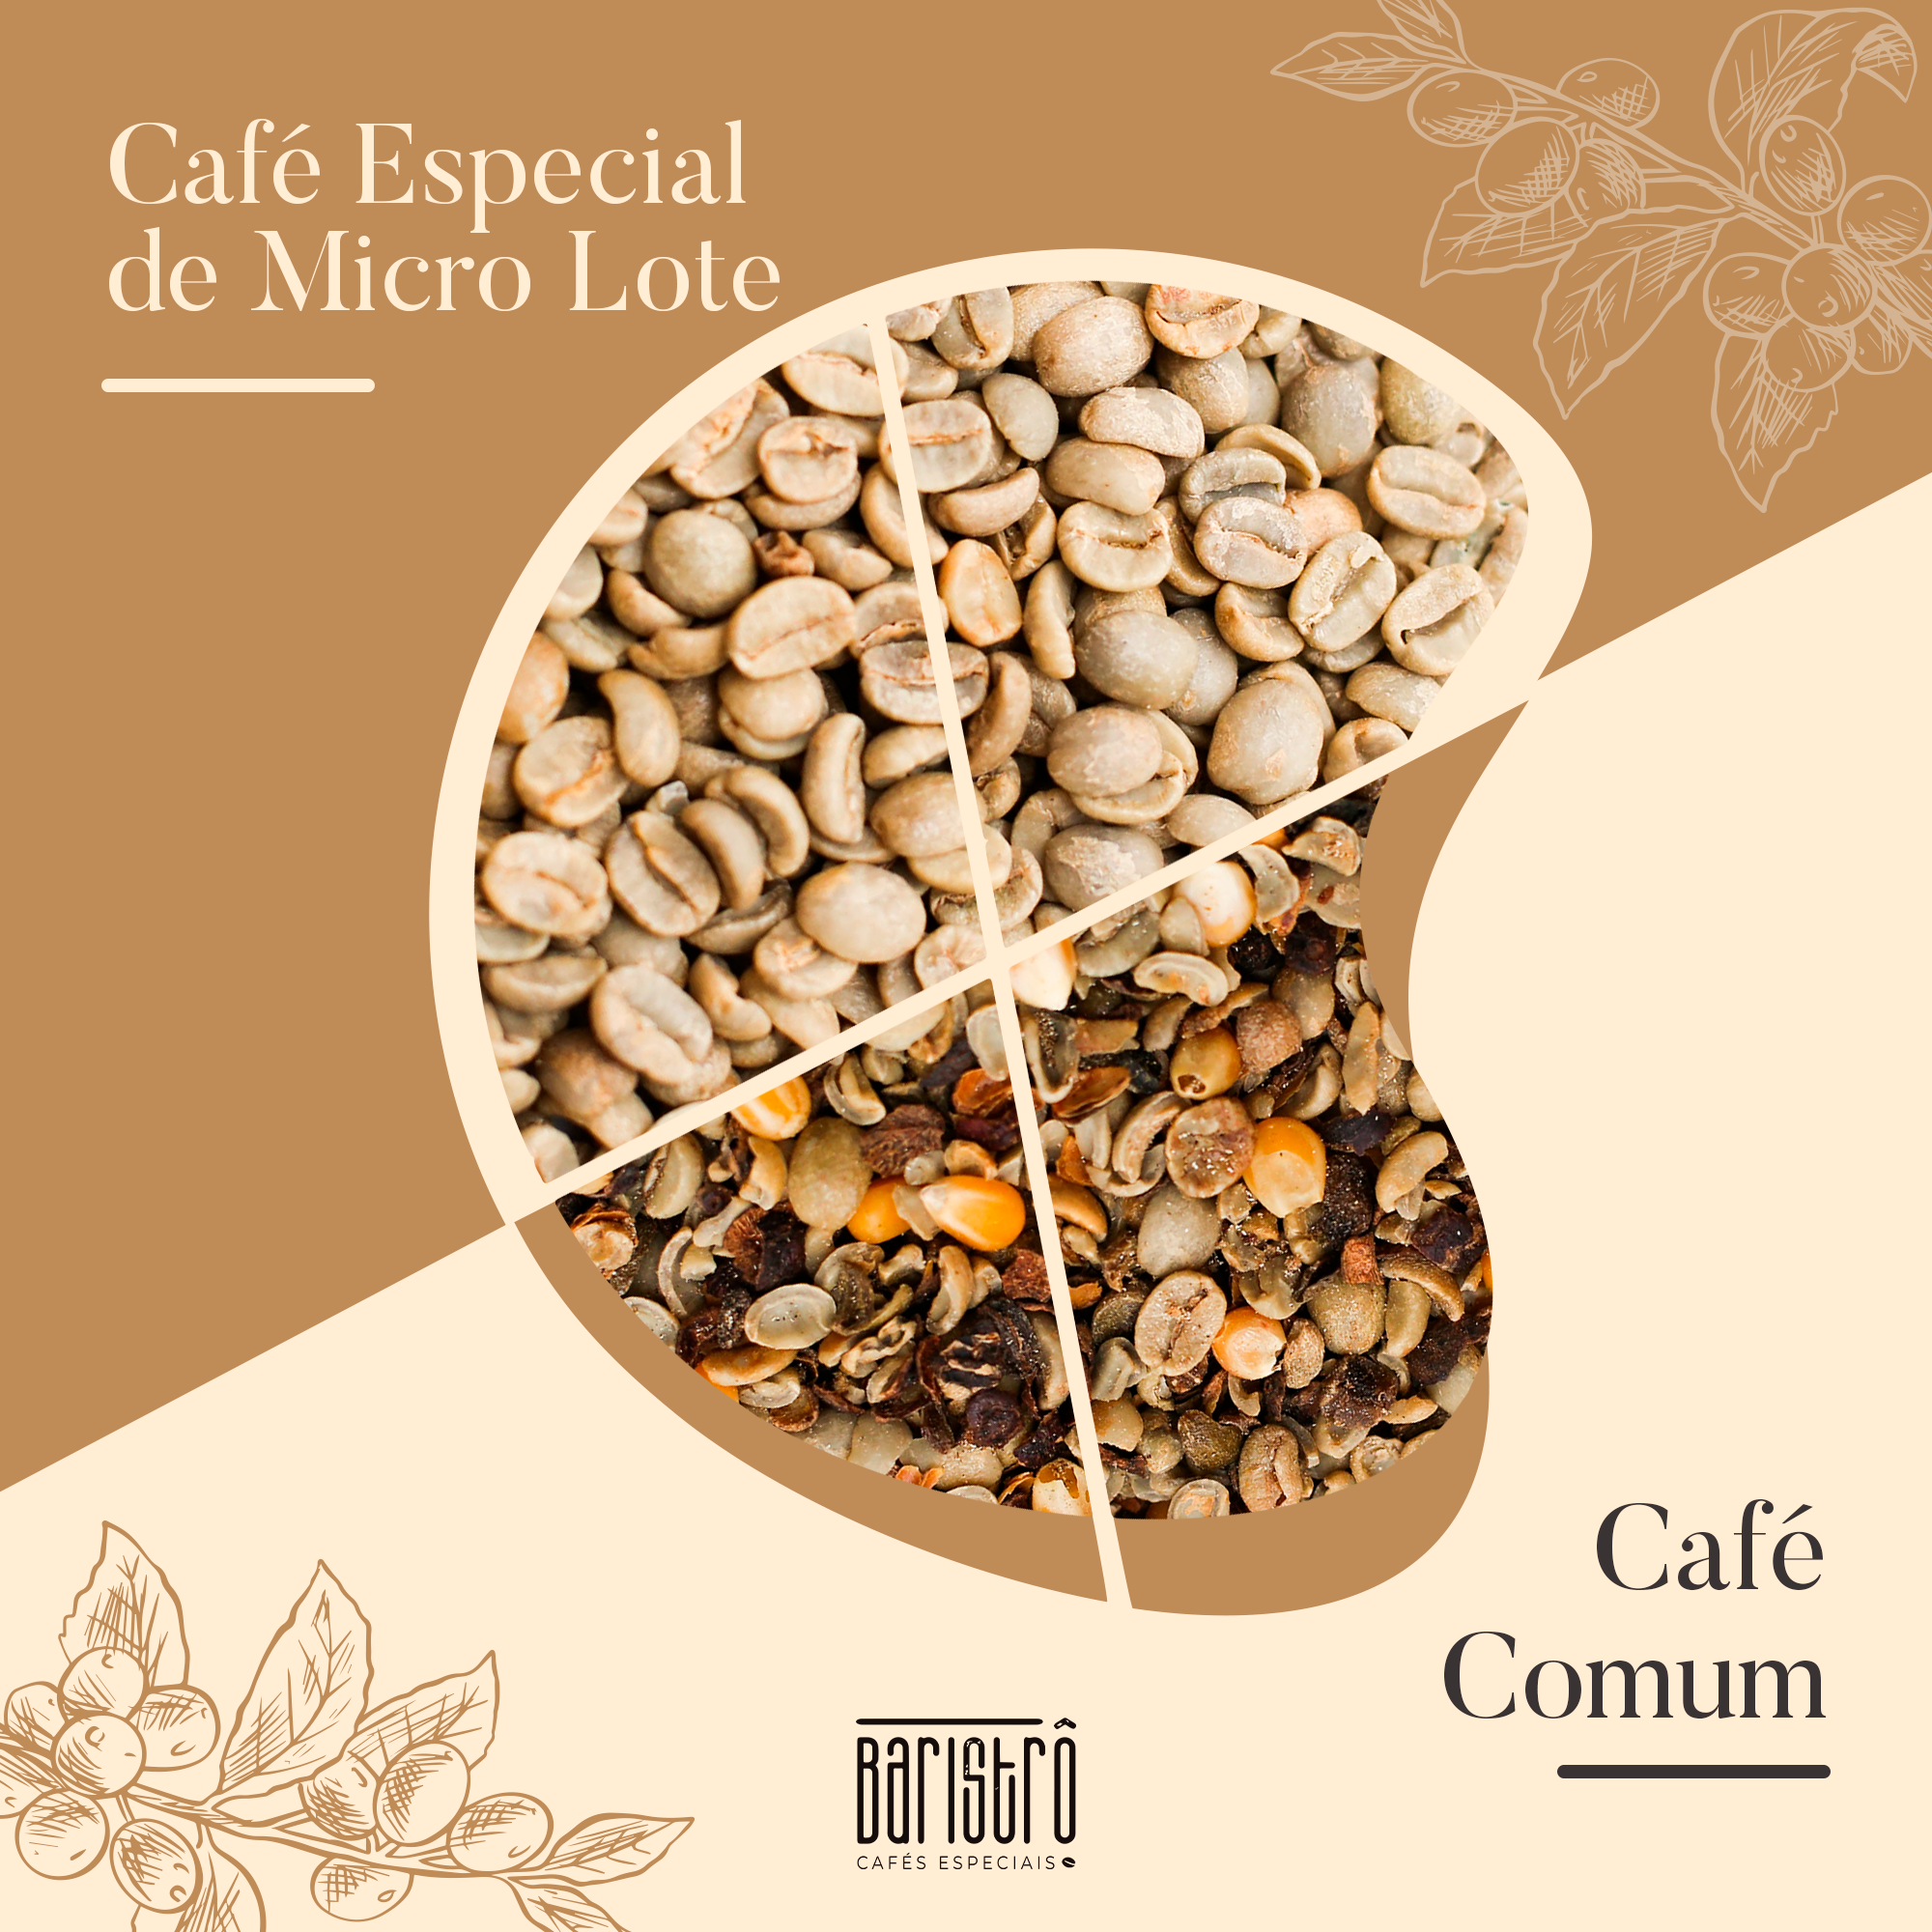 Café Arábica X Café Conilon: Entenda as diferenças!